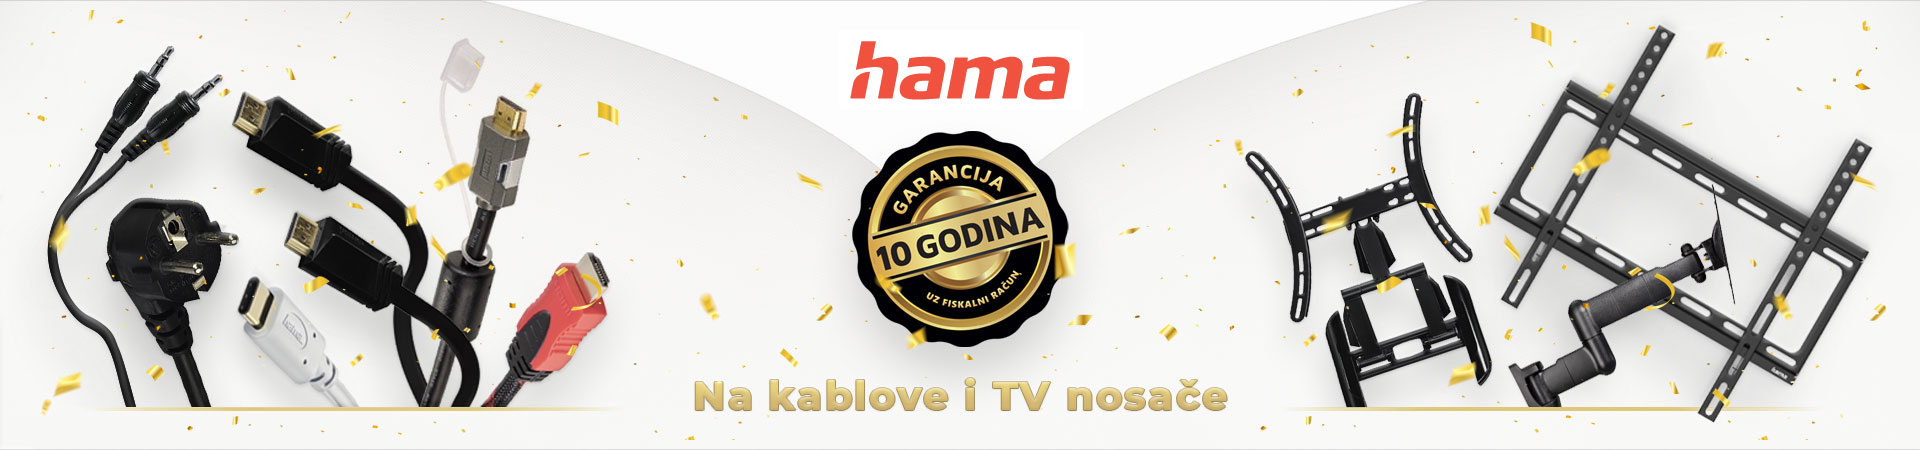 10 godina garancije na Hama kablove i TV nosače